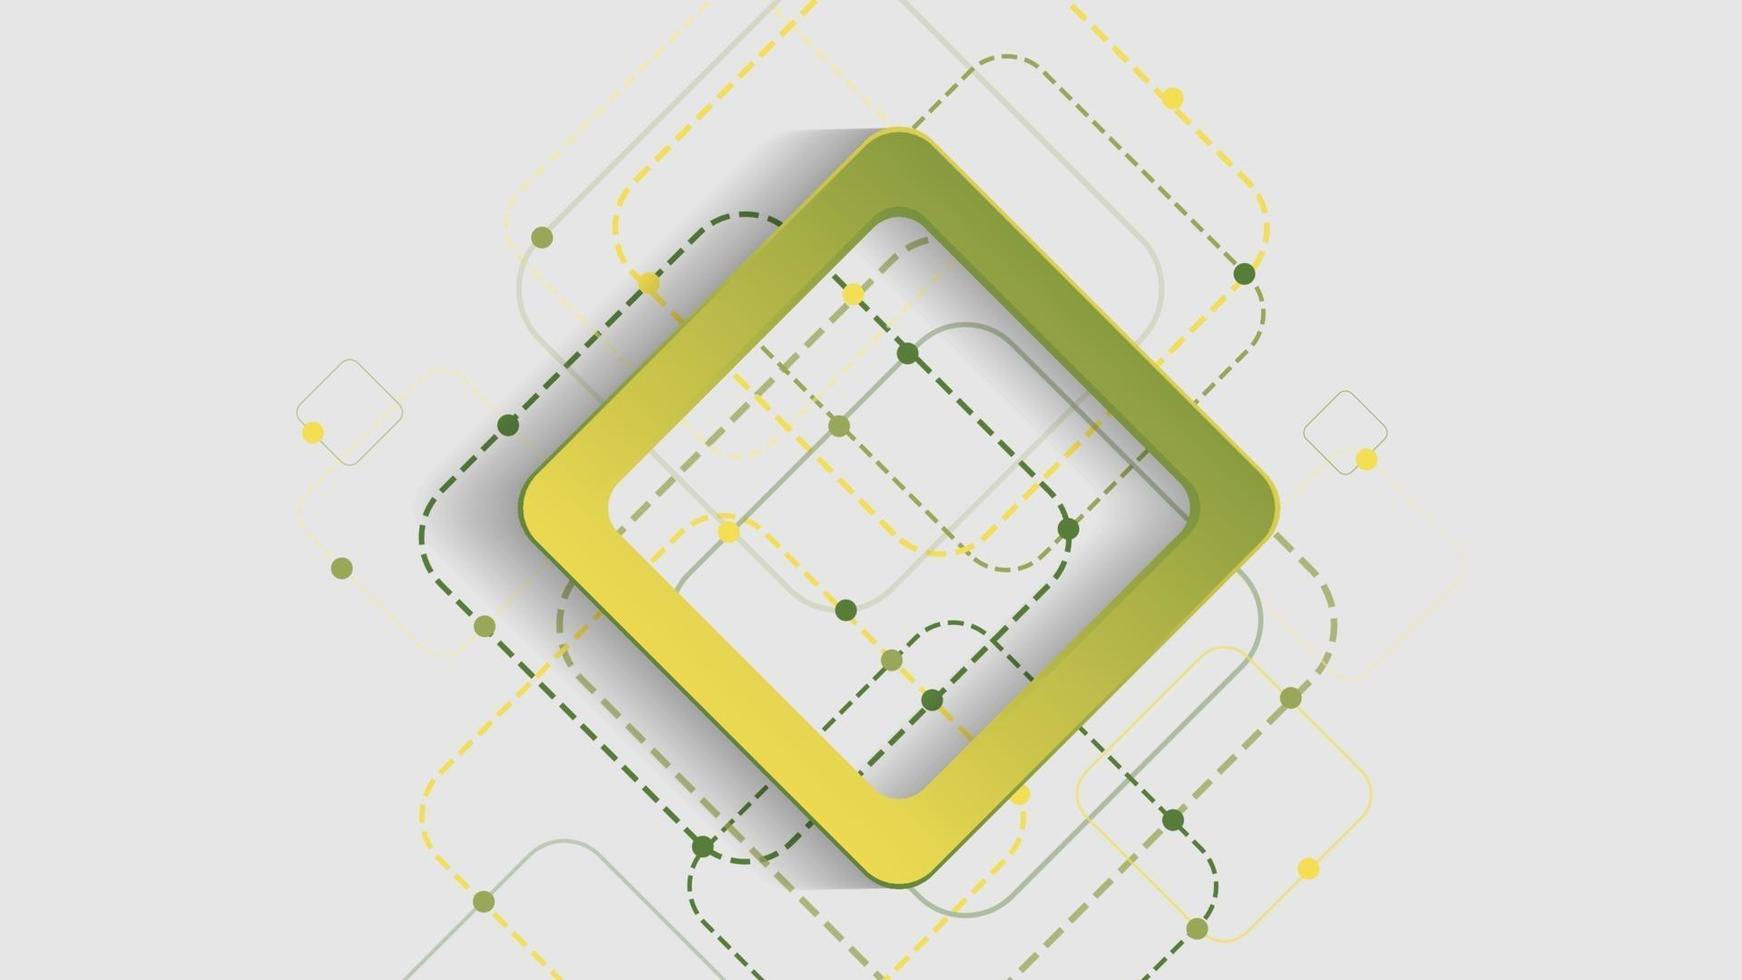 abstrait géométrique avec des carrés verts et jaunes sur fond blanc vecteur